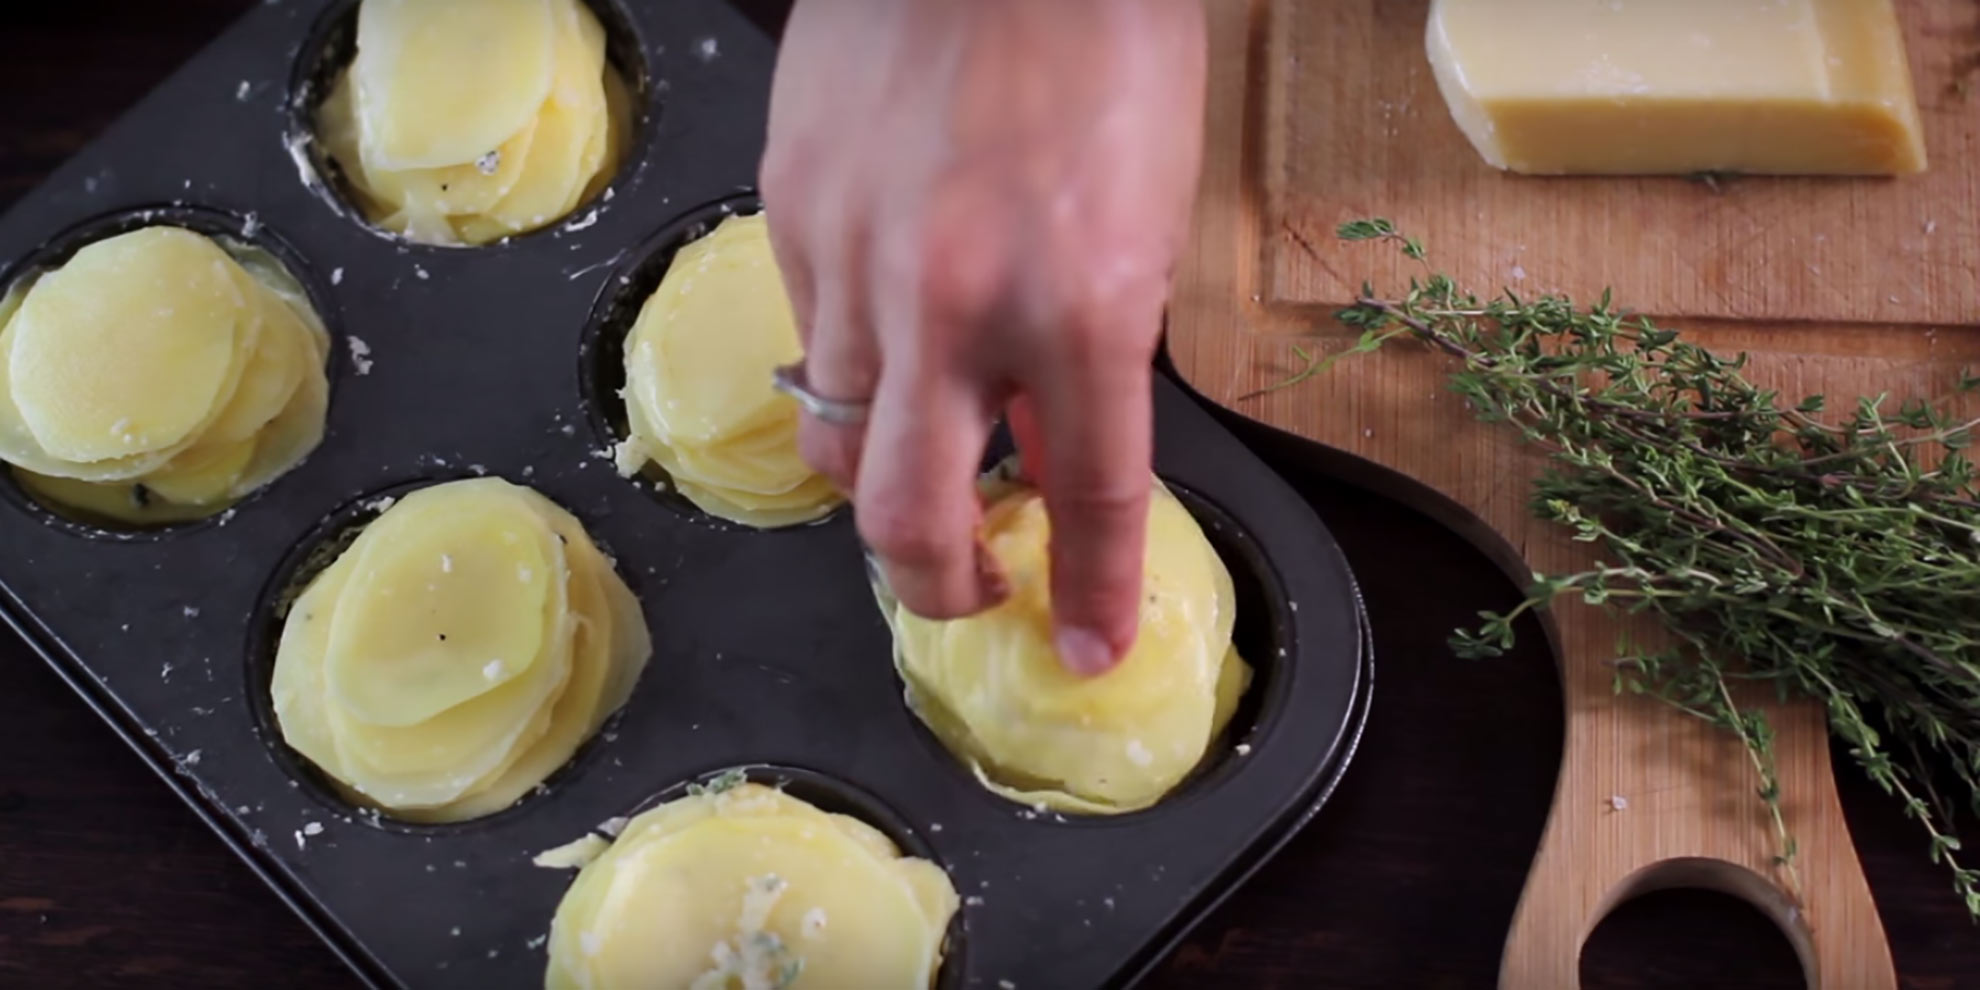 Parmesan-Potato-Stacks